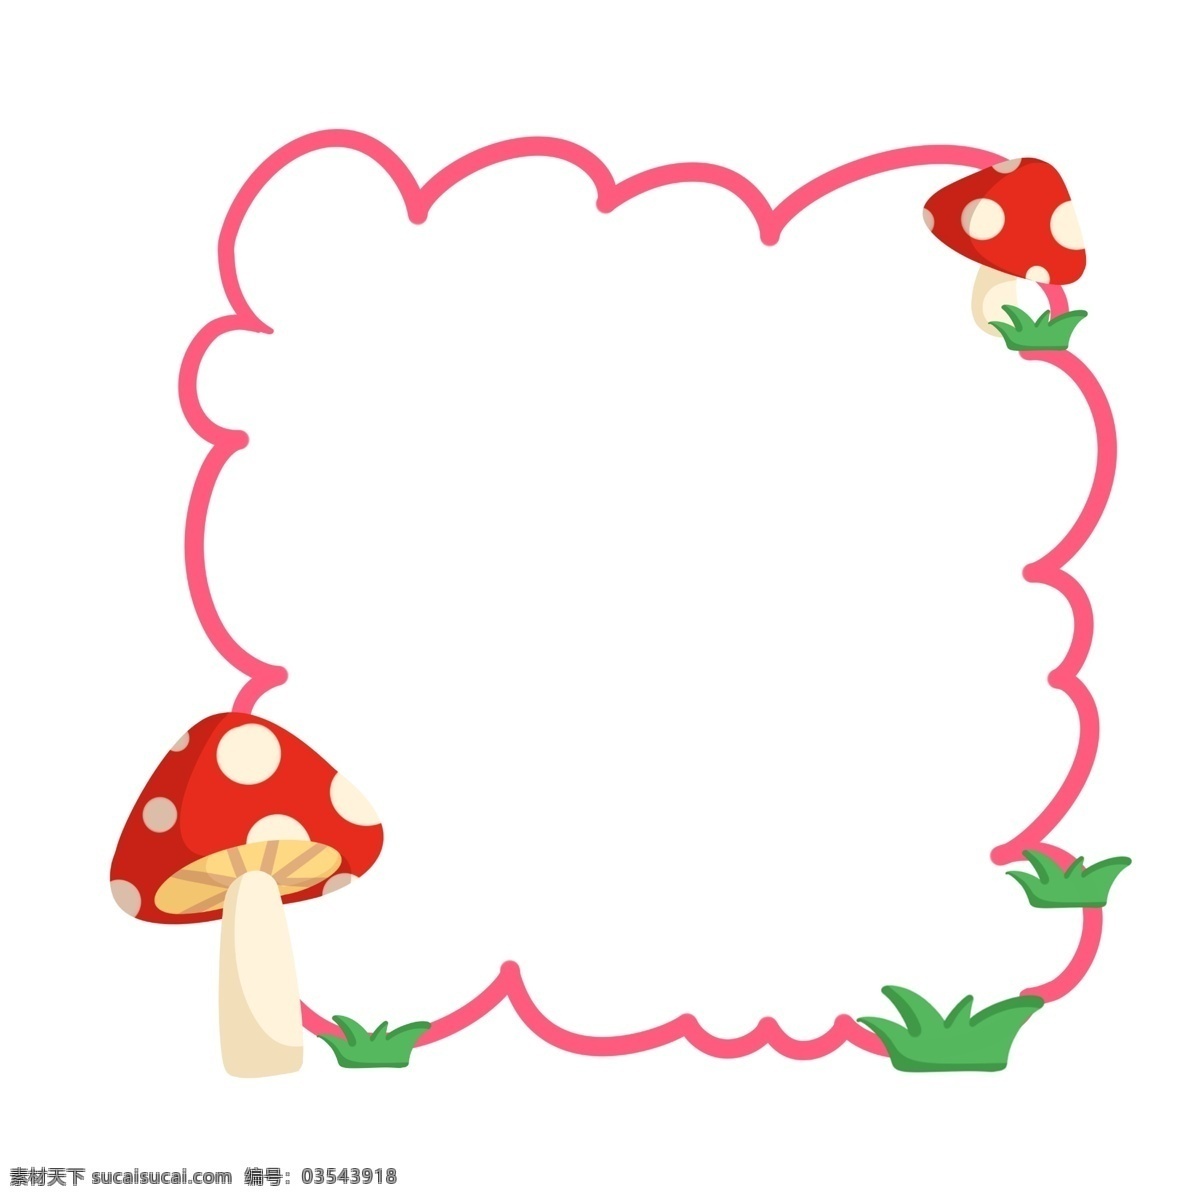 卡通 蘑菇 边框 插画 蘑菇边框 红色蘑菇边框 卡通边框 蘑菇边框插画 红色边框 植物边框 边框插图